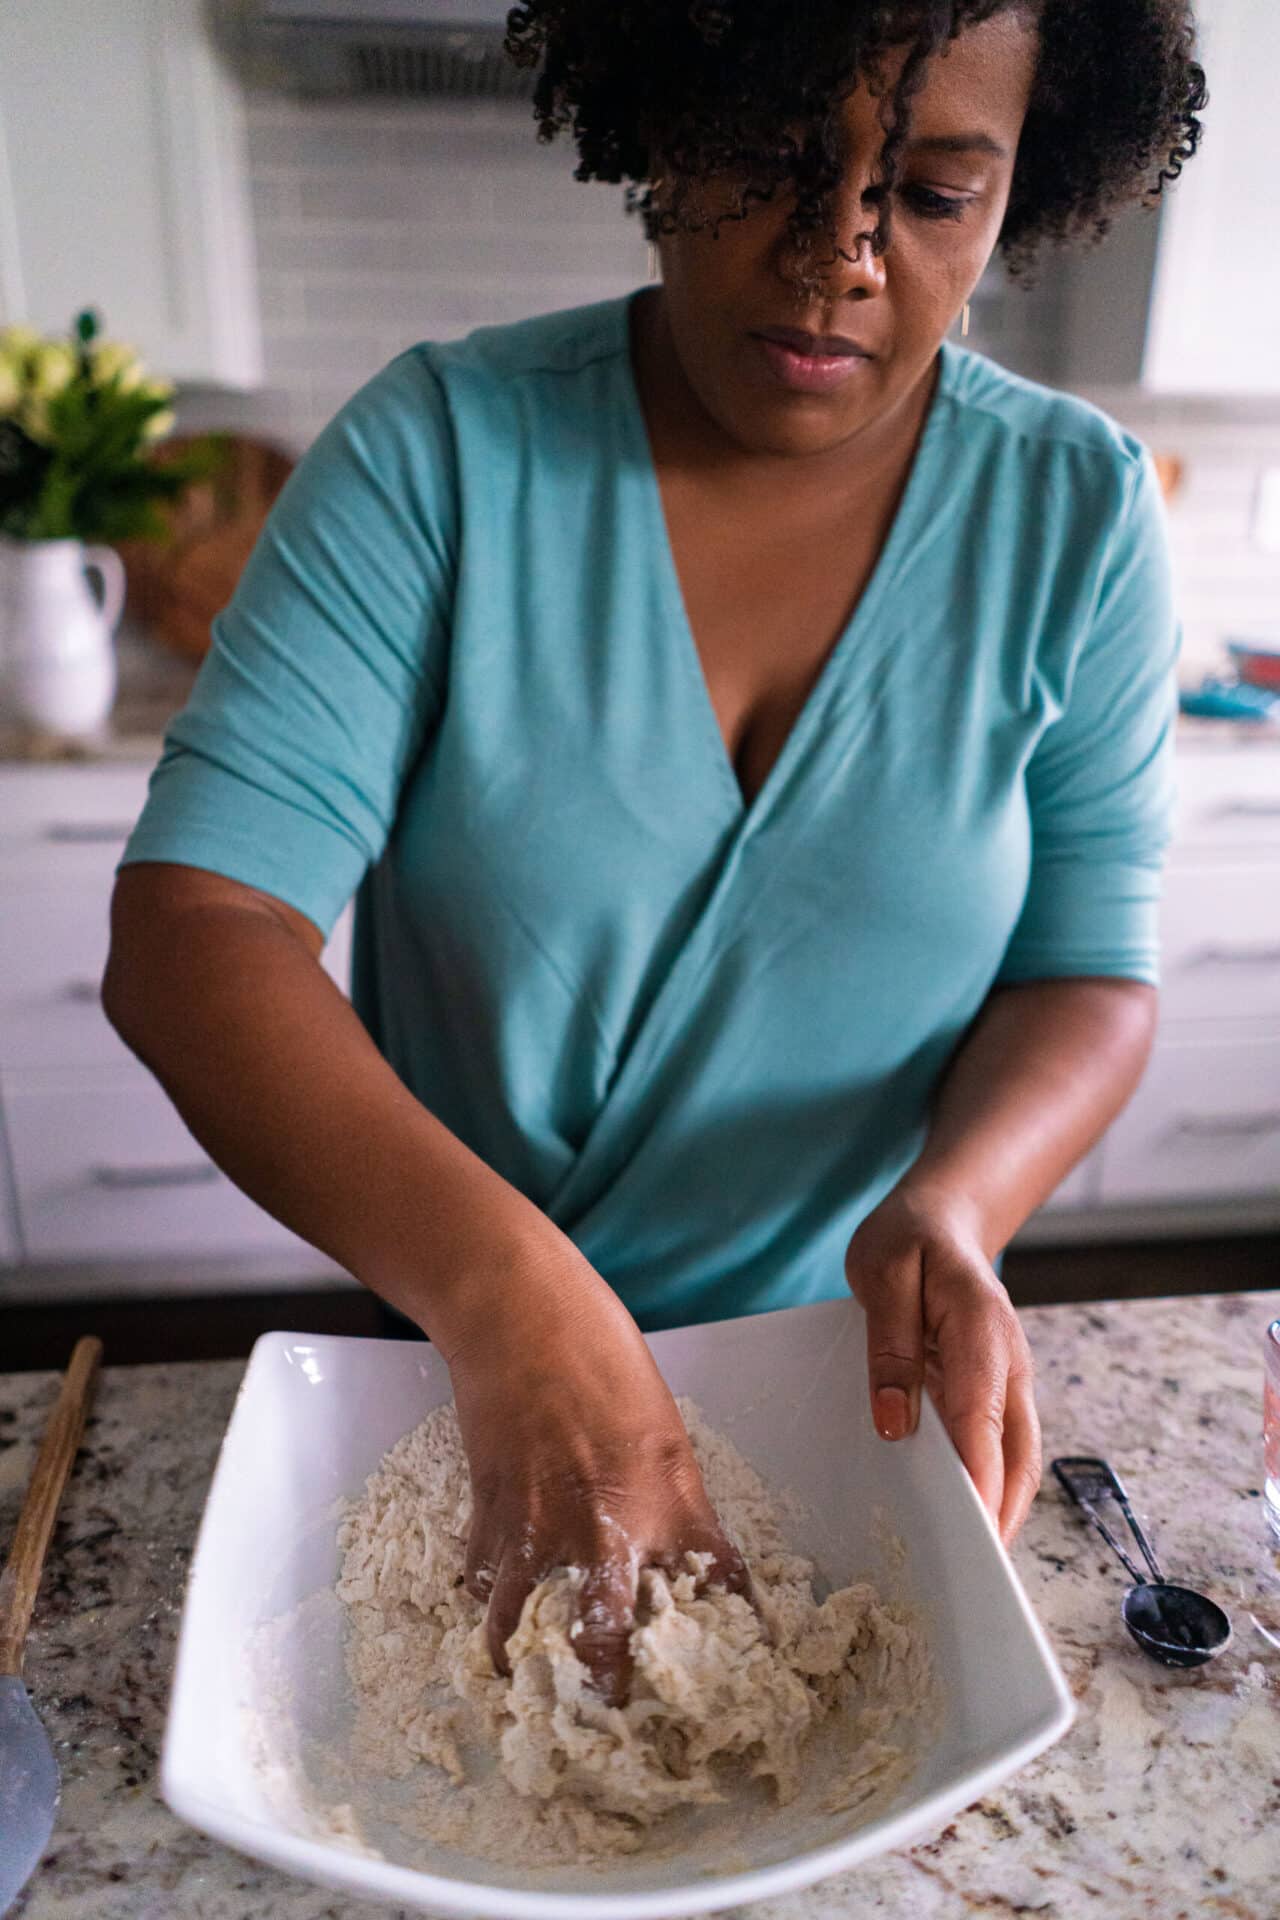 woman in blue shirt mixing dough